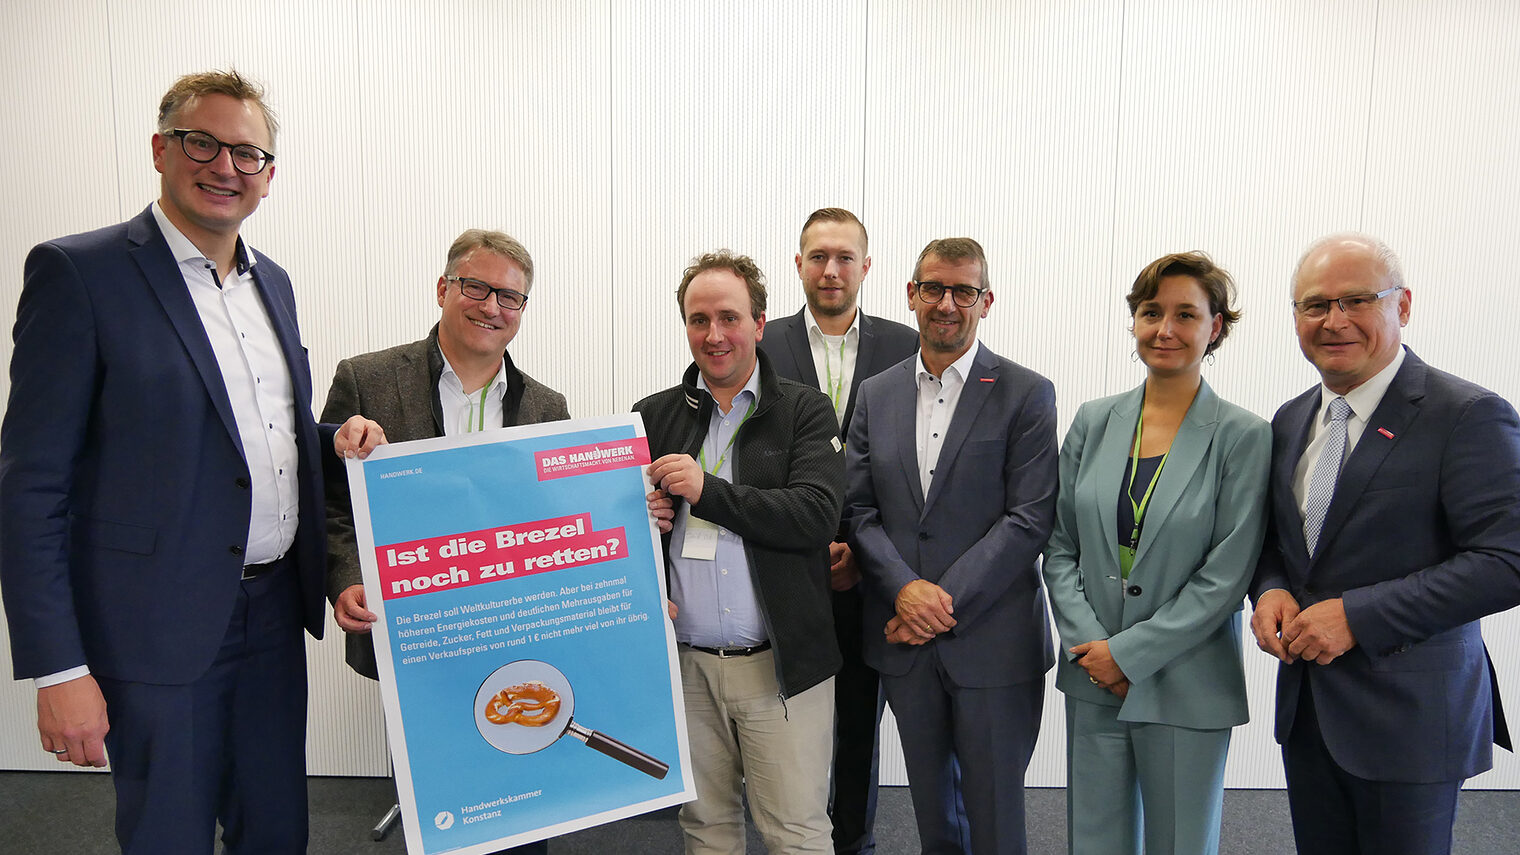 Gruppenfoto der Landesdelegiertenkonferenz der Grünen mit Georg Hiltner und Werner Rottler und Plakat: Ist die Brezel noch zu retten?